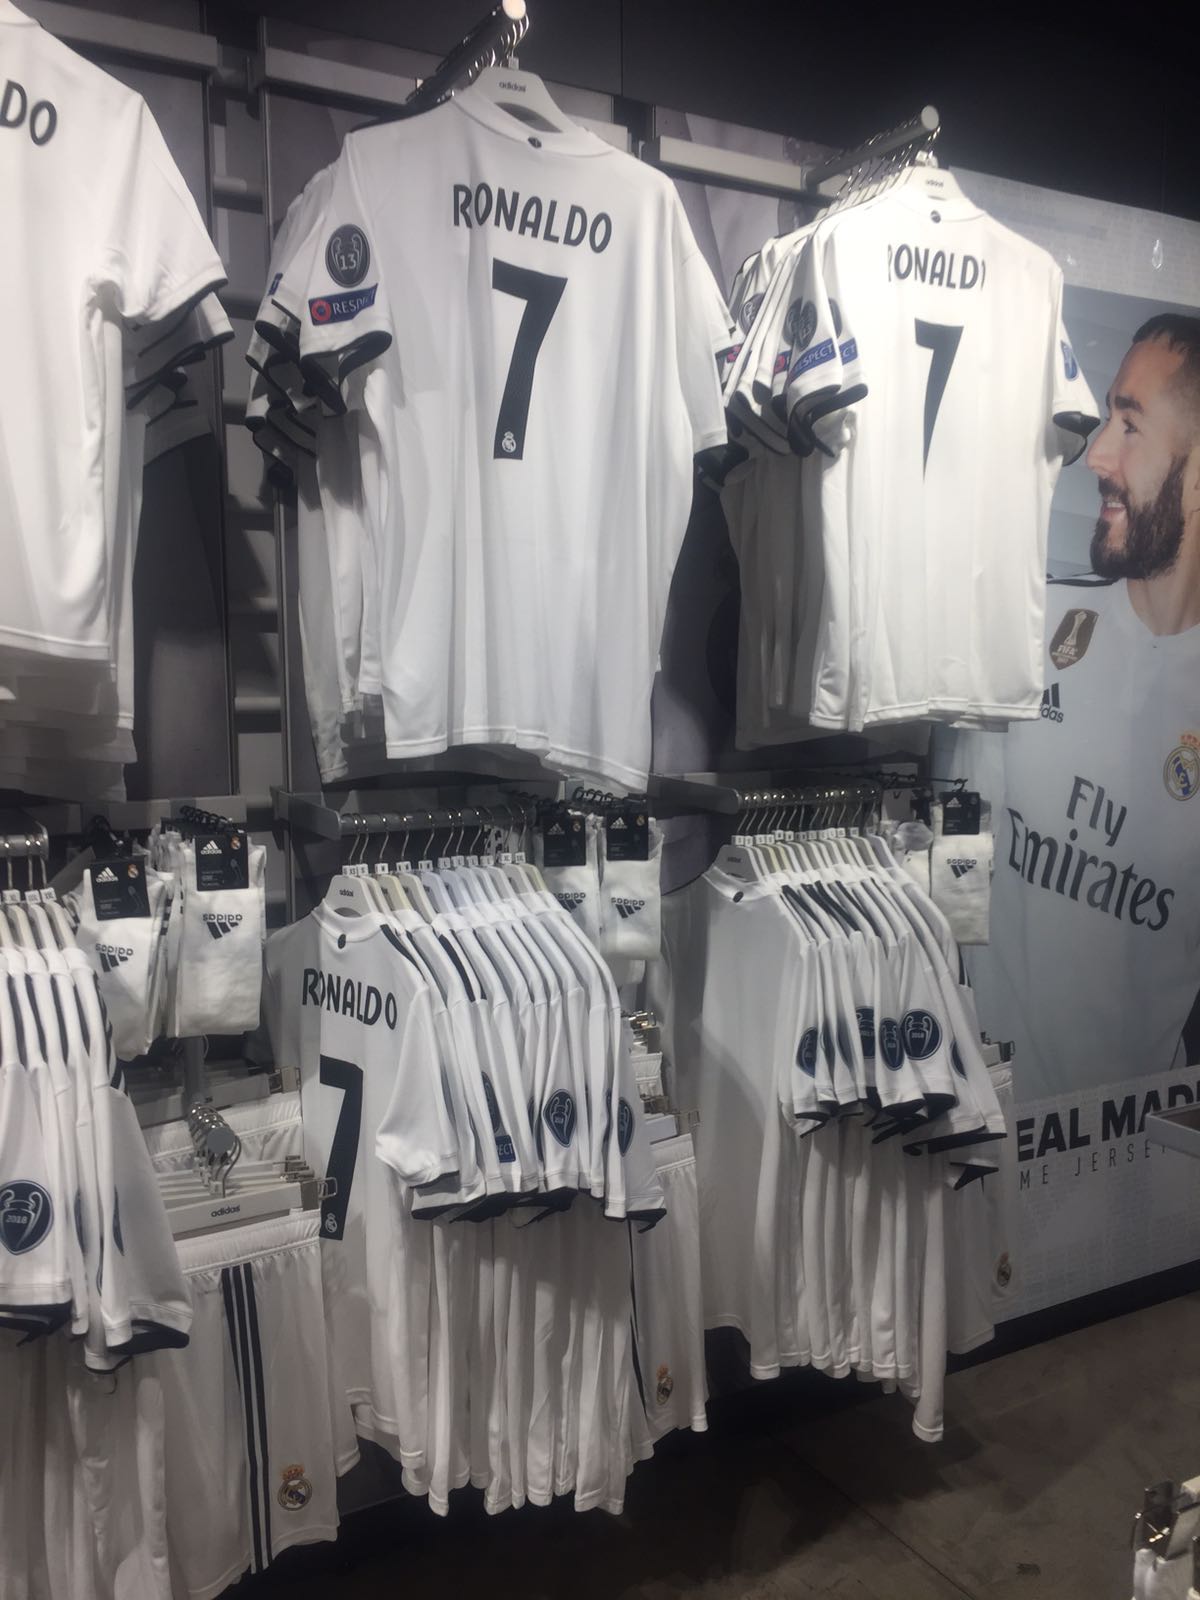 El Larguero on X: Las tiendas del Real Madrid siguen vendiendo la